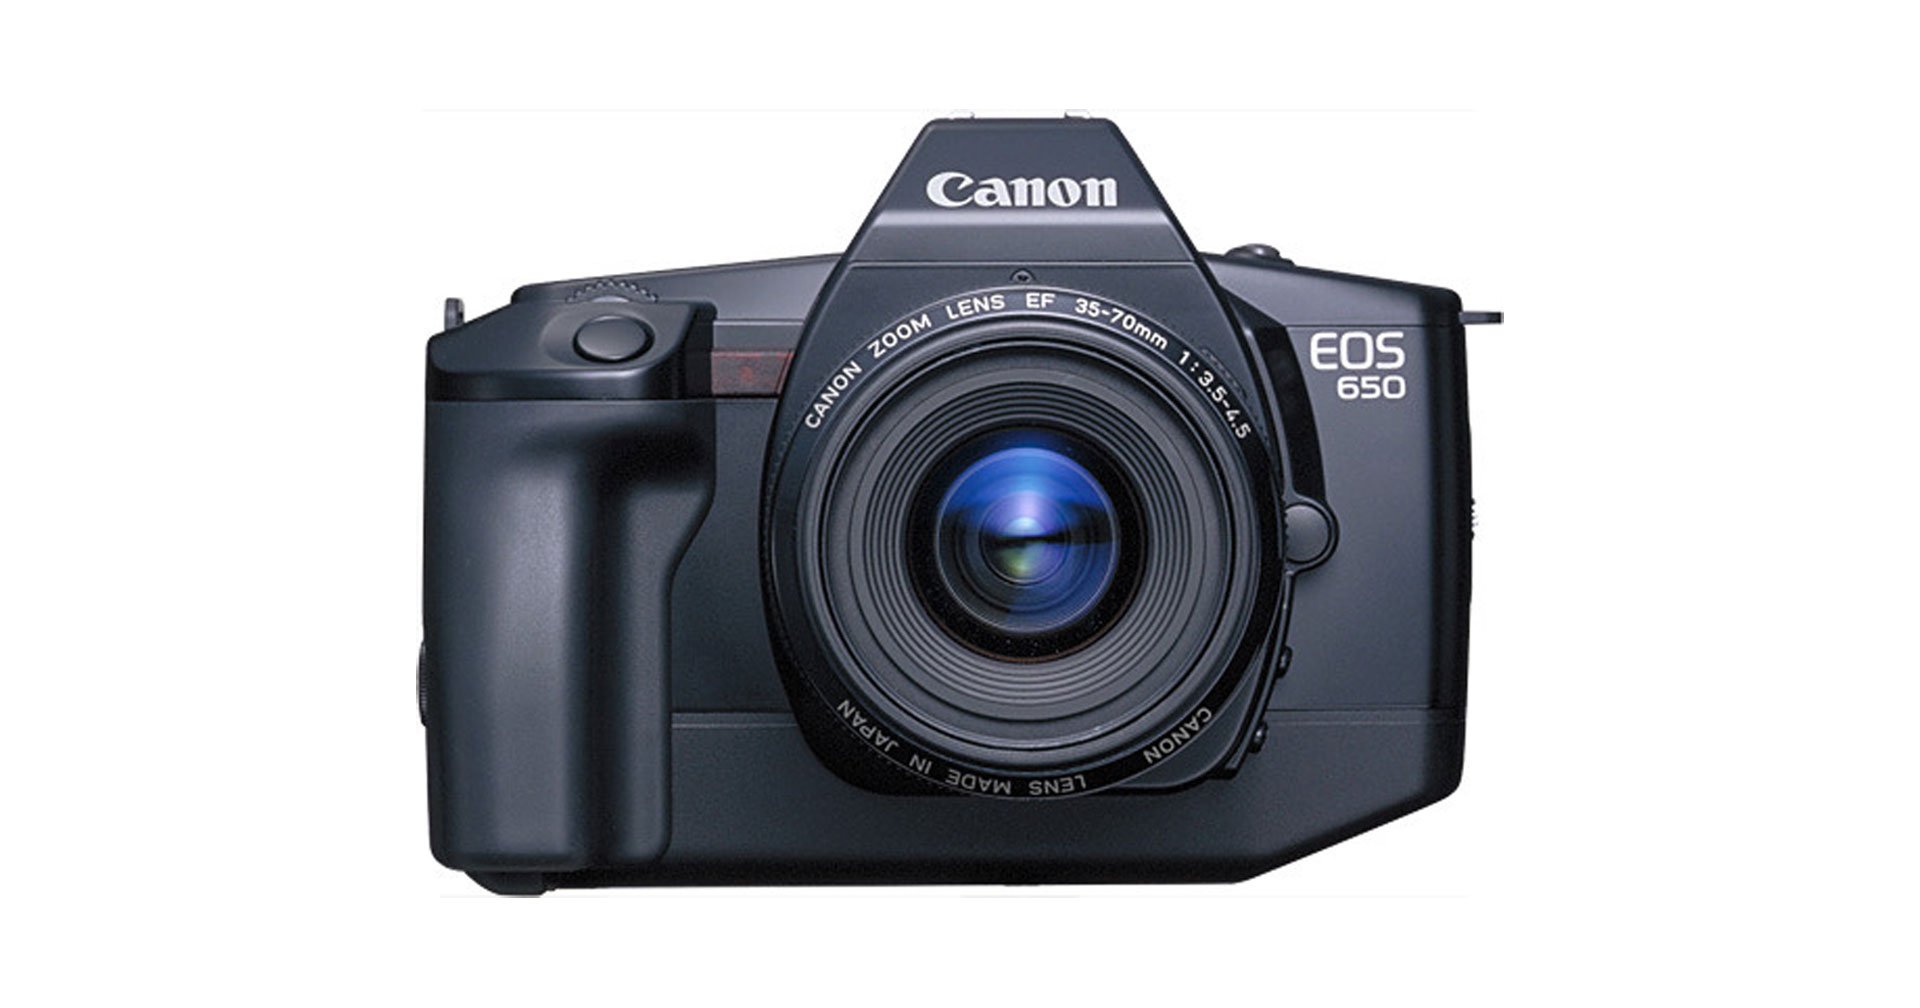 Canon เตรียมฉลองครบรอบ 35 ปี กล้องตระกูล EOS System ในเดือนหน้า